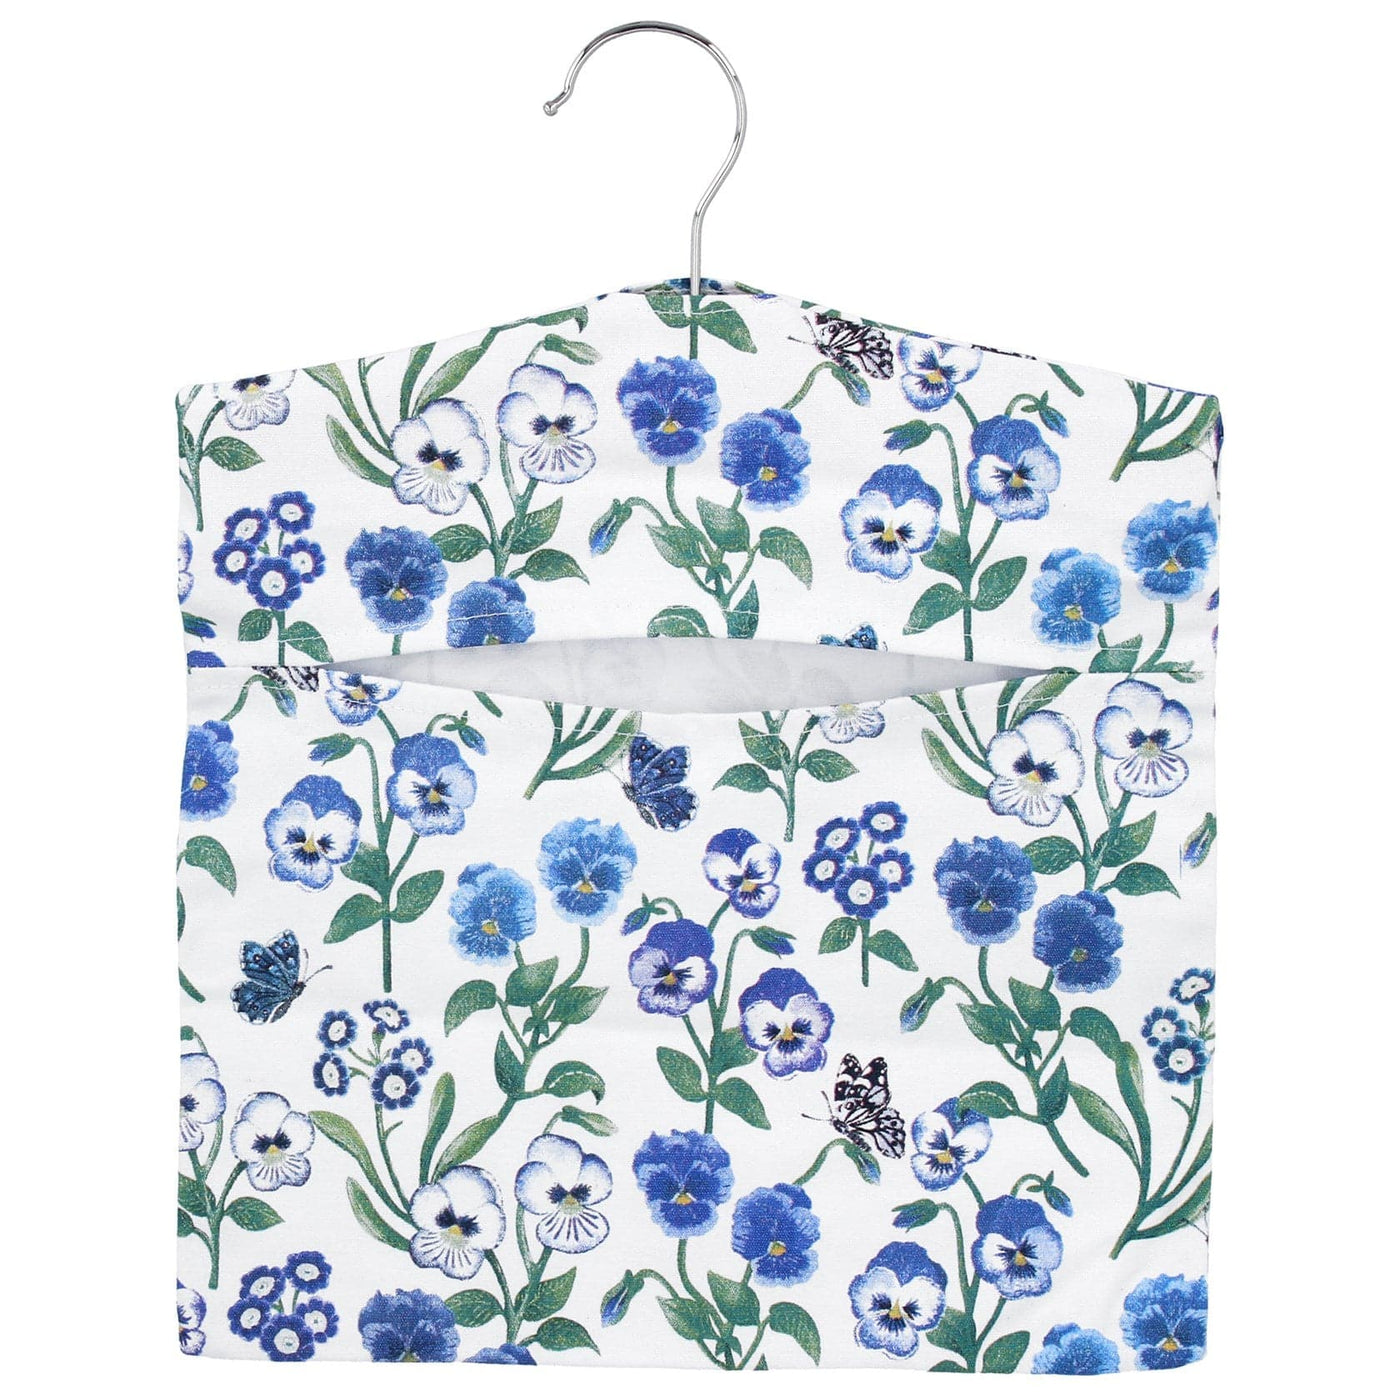 Gisela Graham Home accessories Violets Design Spring Themed Peg Bag